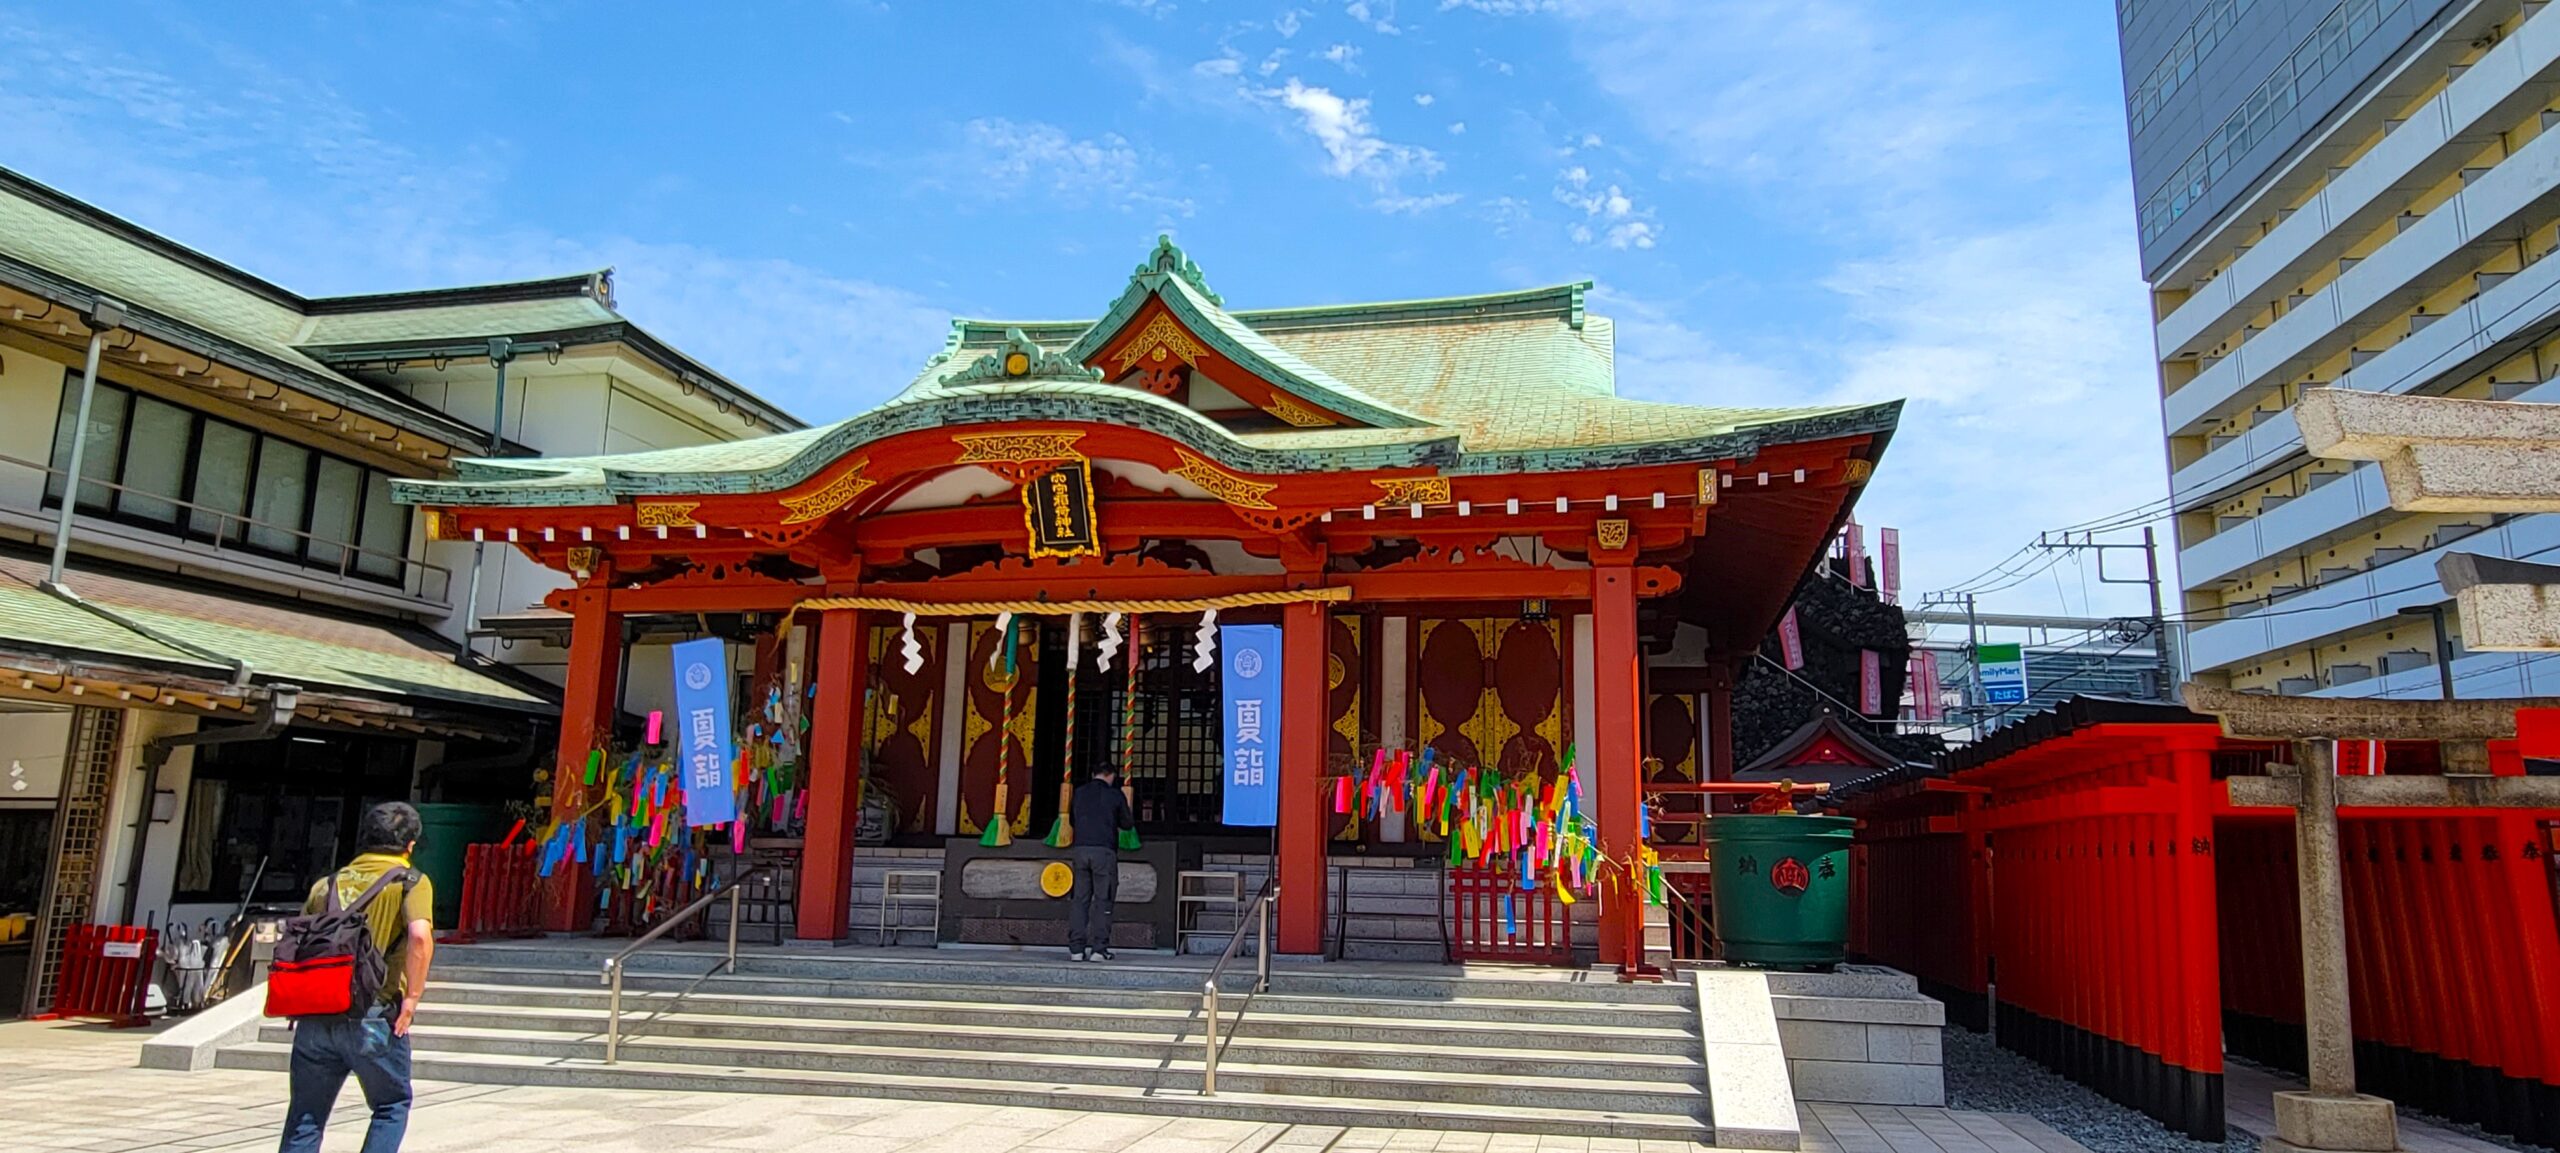 Anamori Inari Shrine in Tokyo